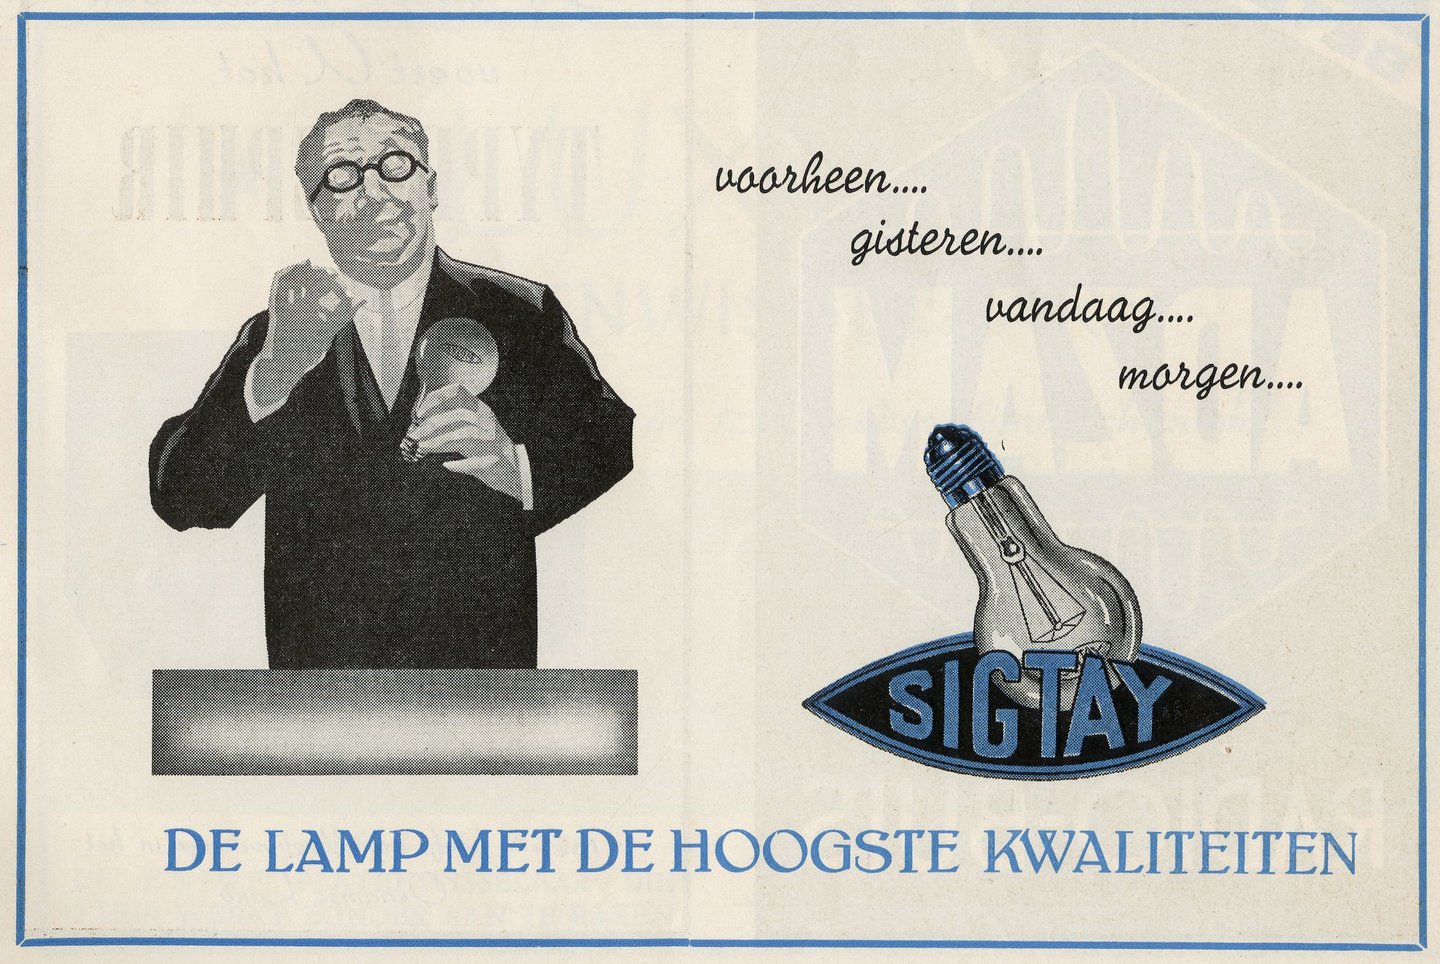 Reclame voor lampen van het merk Sigtay